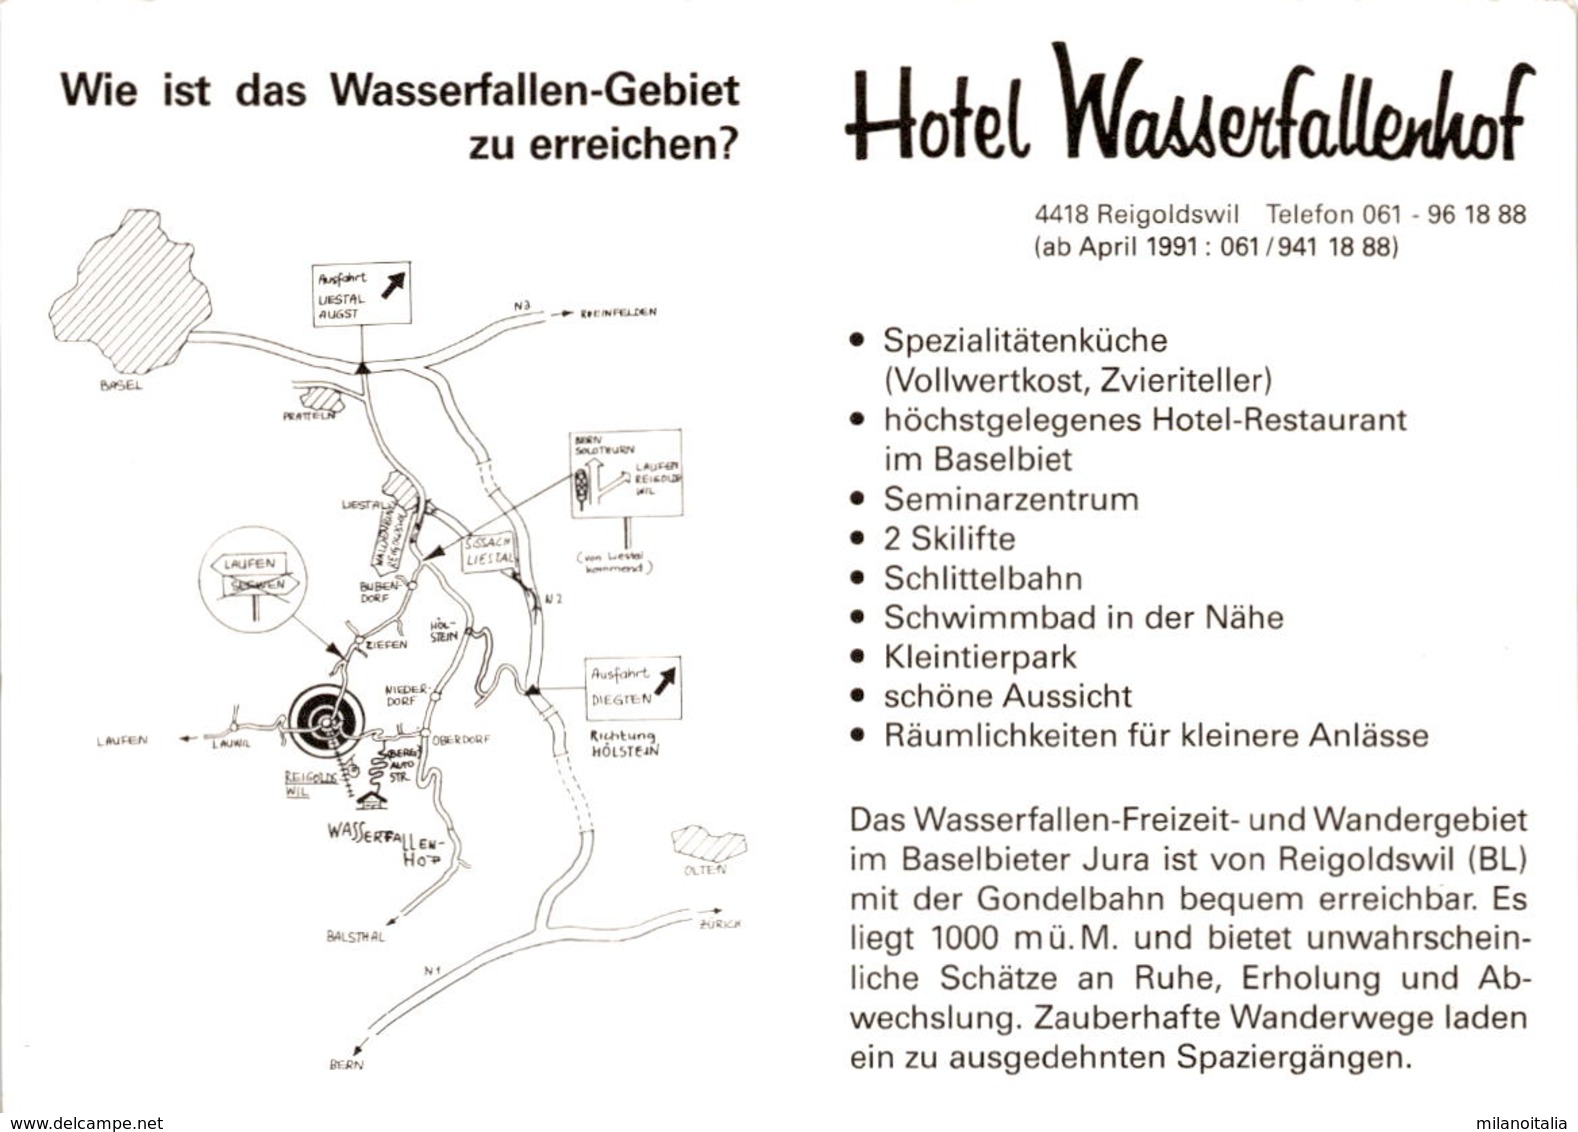 Hotel Wasserfallenhof - Reigoldswil - 3 Bilder - Reigoldswil